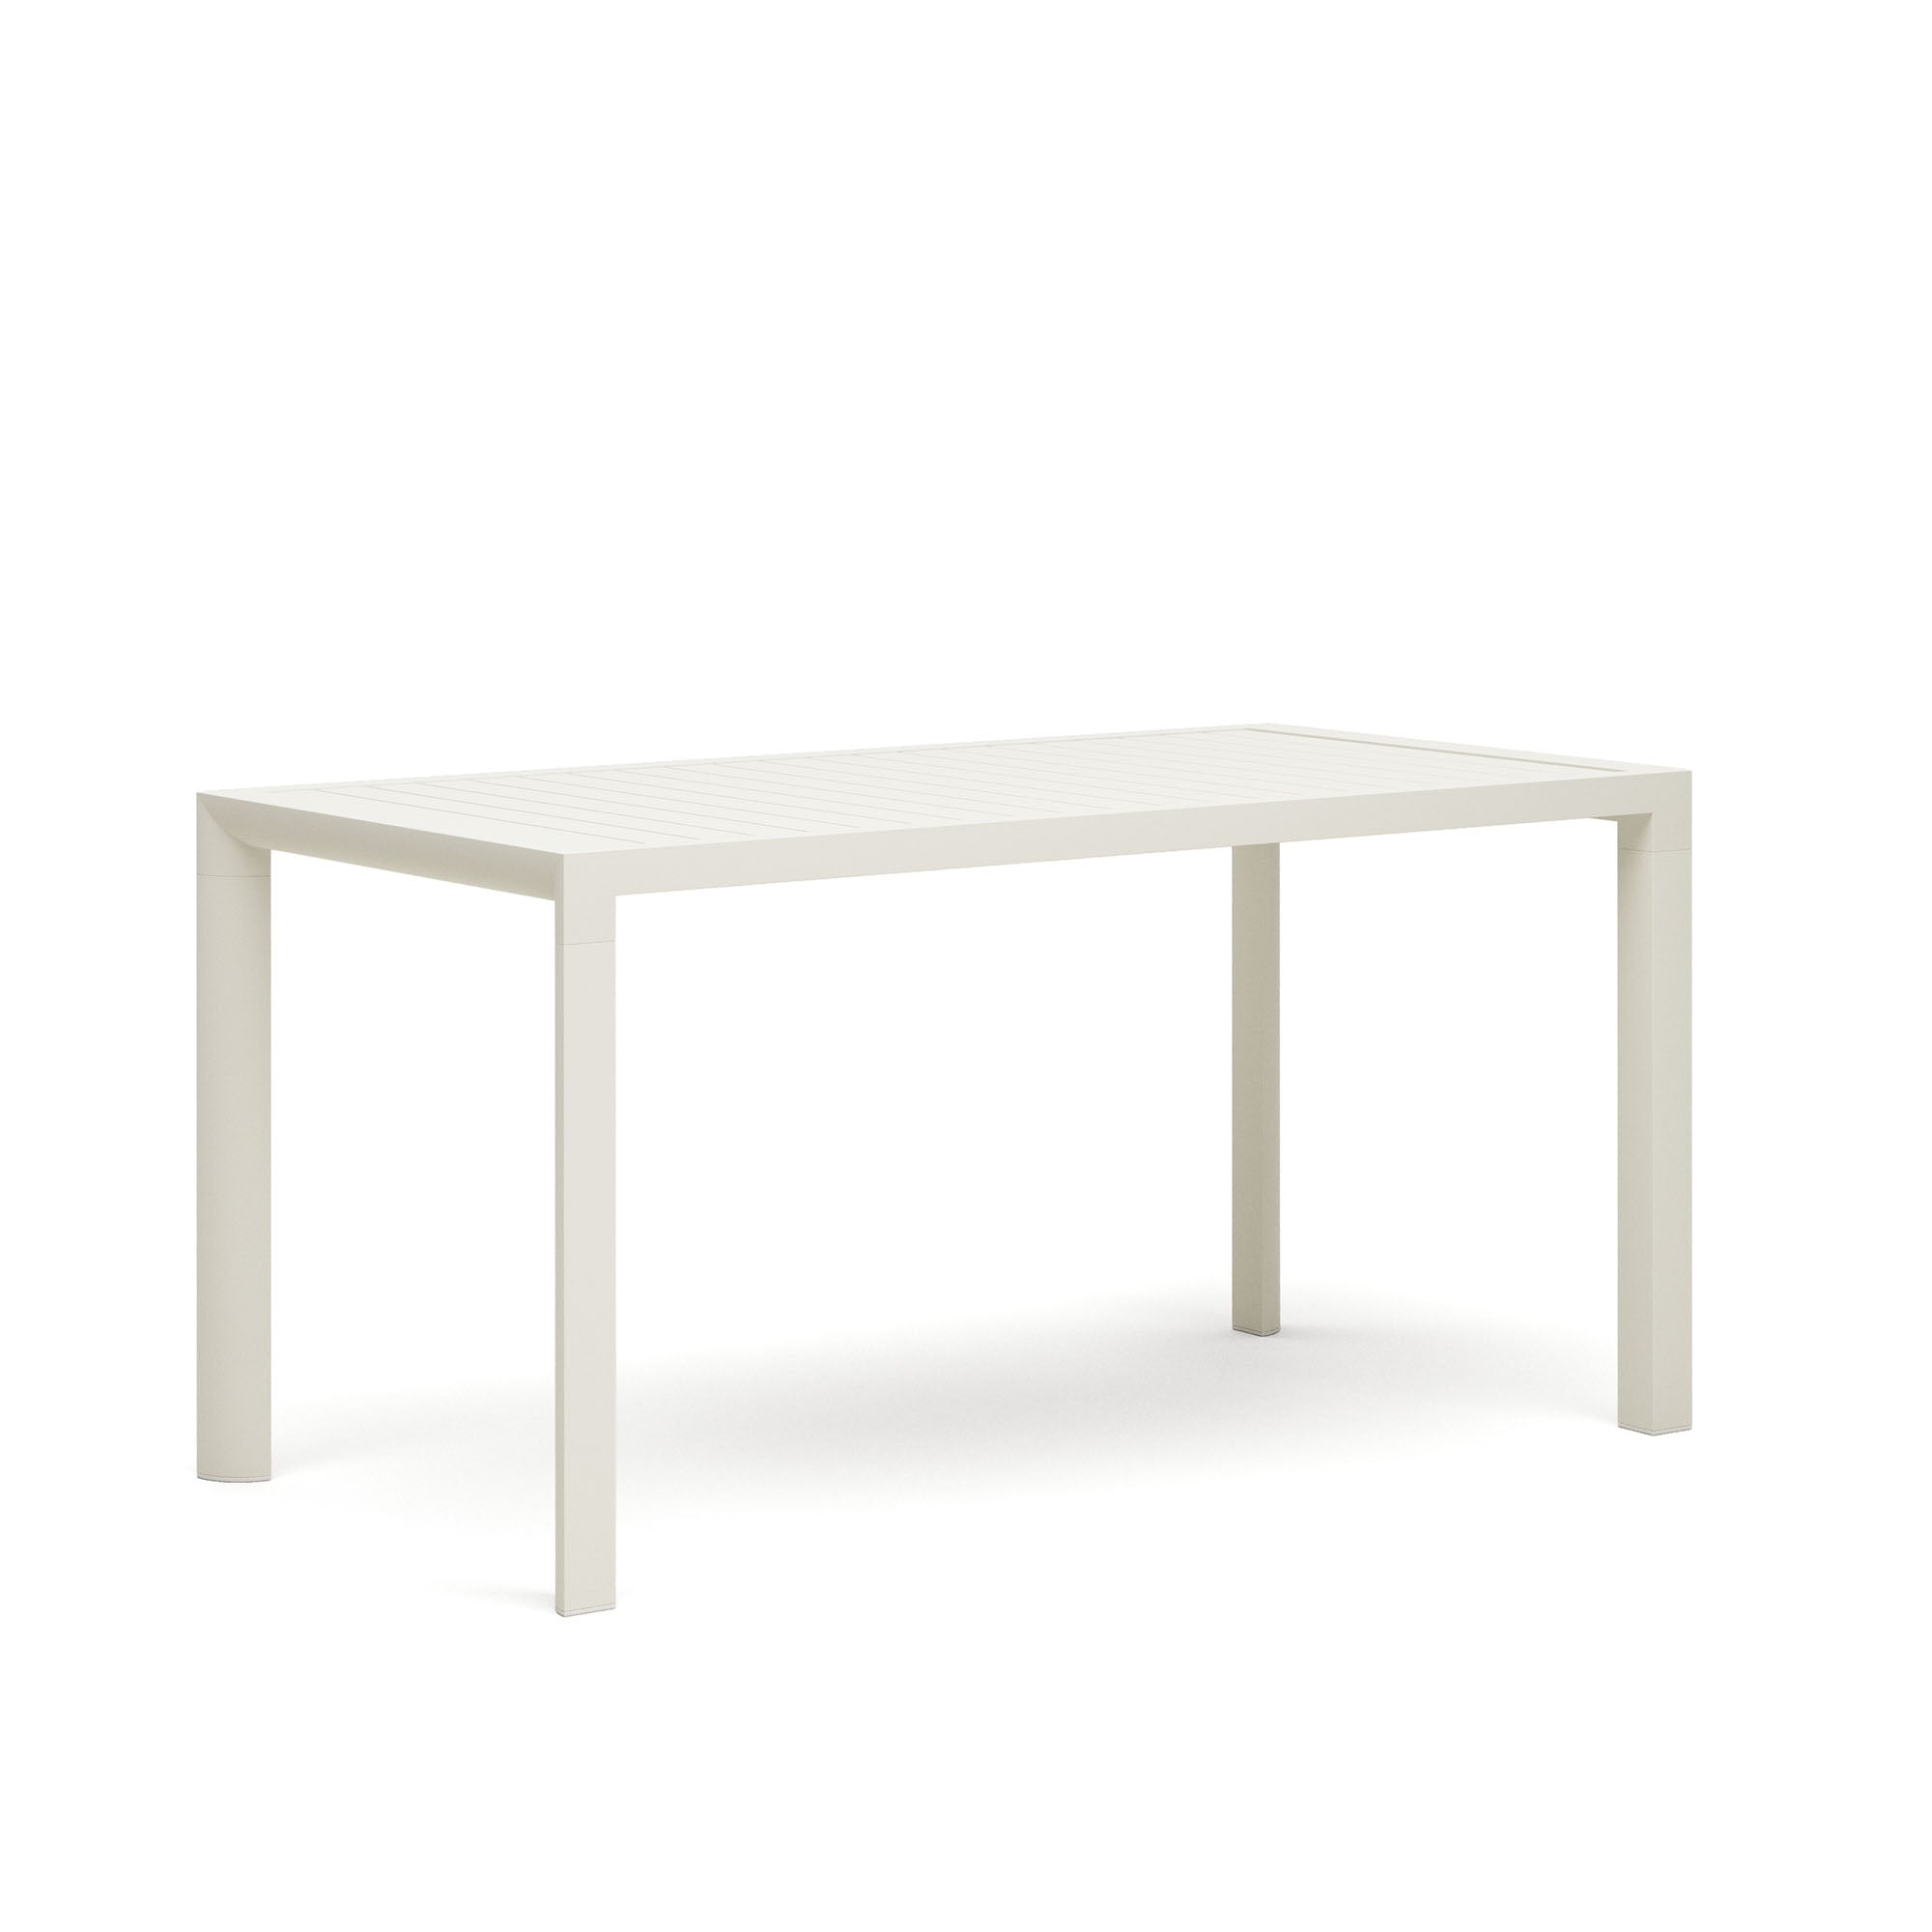 Culip alumínium kültéri asztal, porszórt fehér kivitelben, 150 x 77 cm